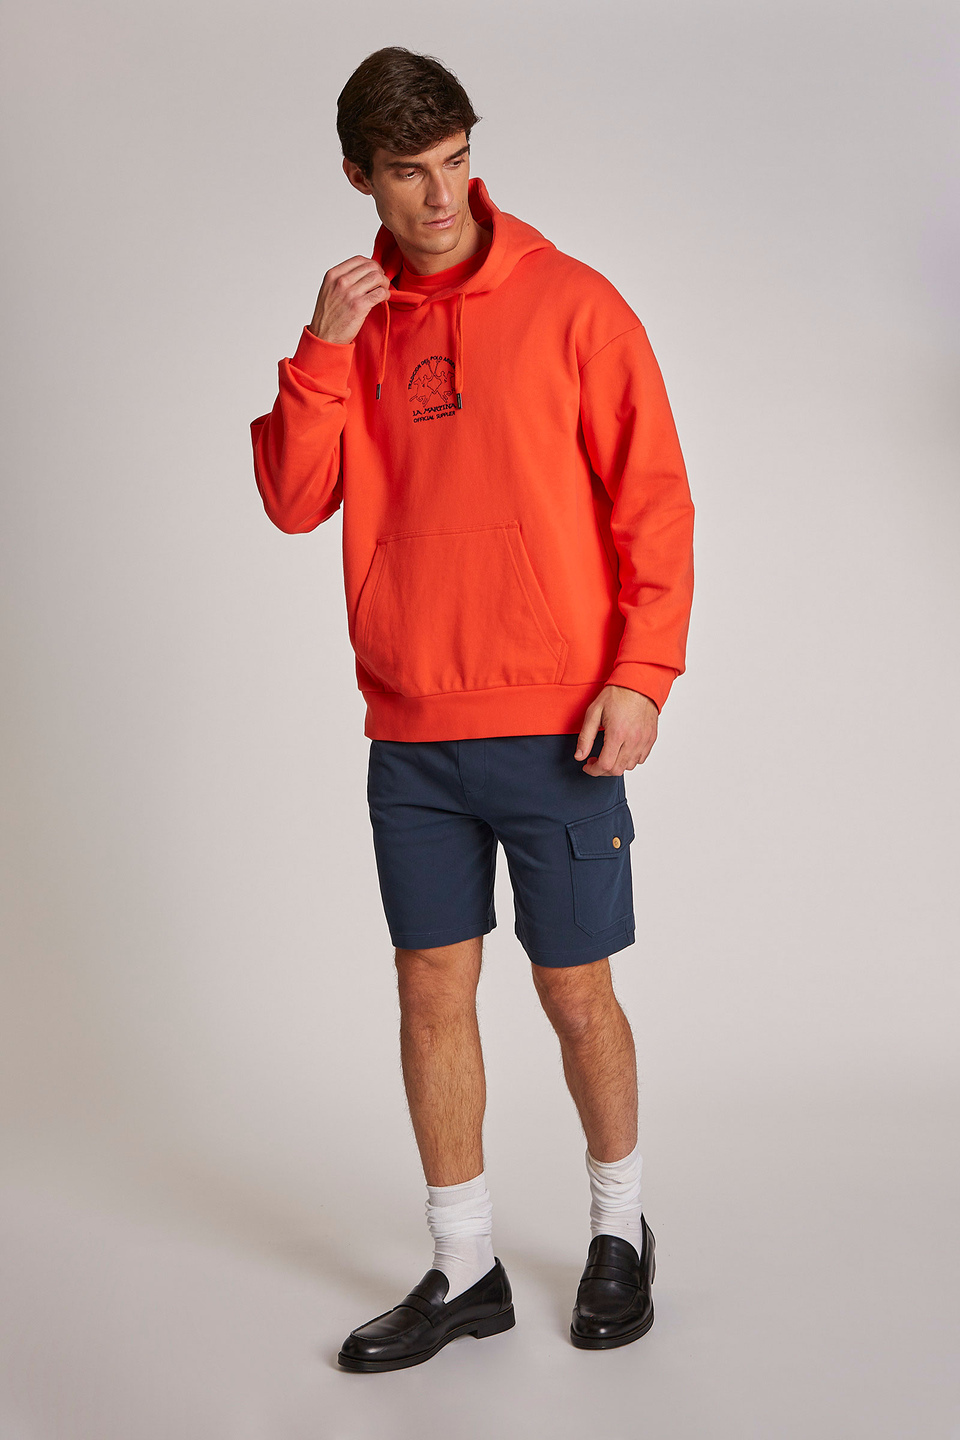 Men's comfort-fit 100% cotton hoodie | La Martina - Official Online Shop